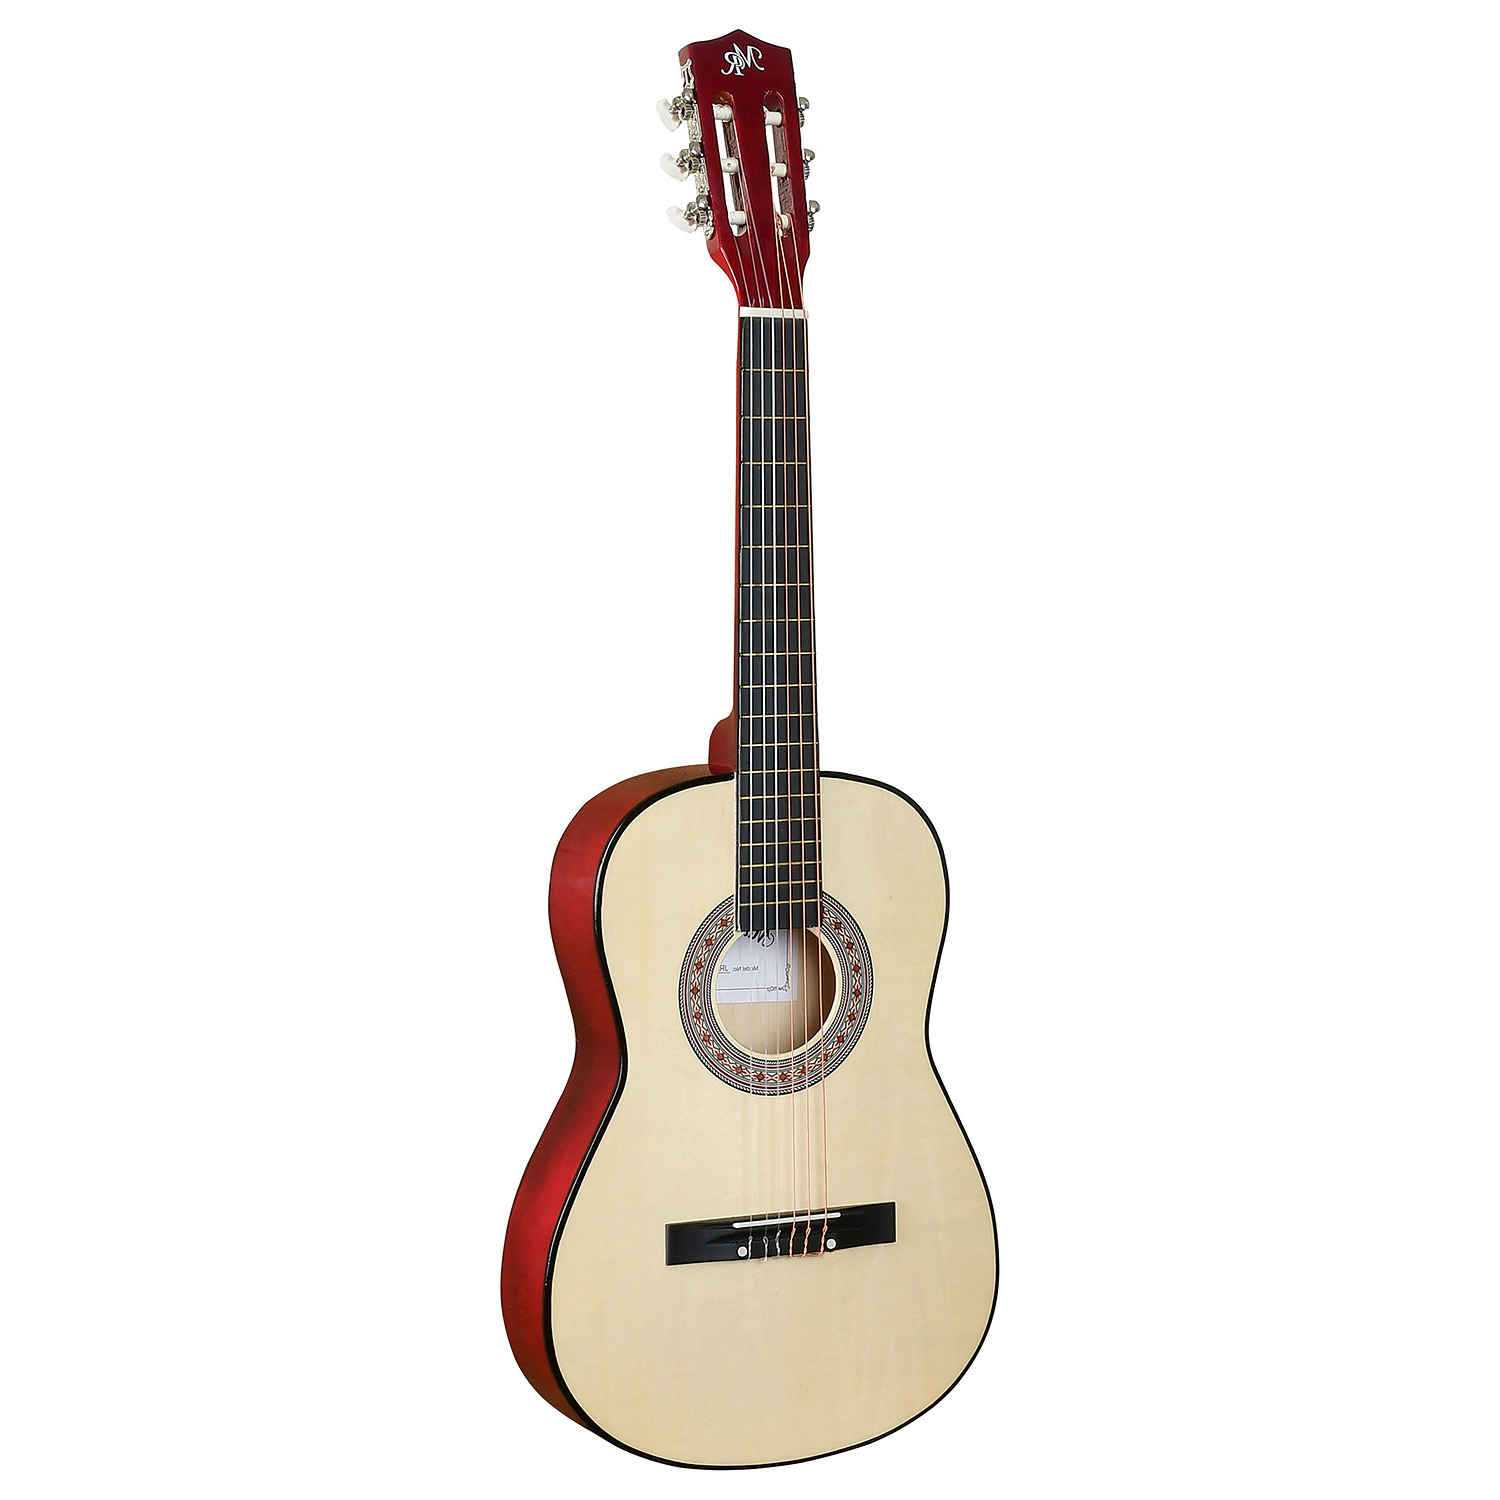 Martin Romas Jr-3410 Left - Леворукая Уменьшенная гитара размер 1/2 для детей 5-10 лет